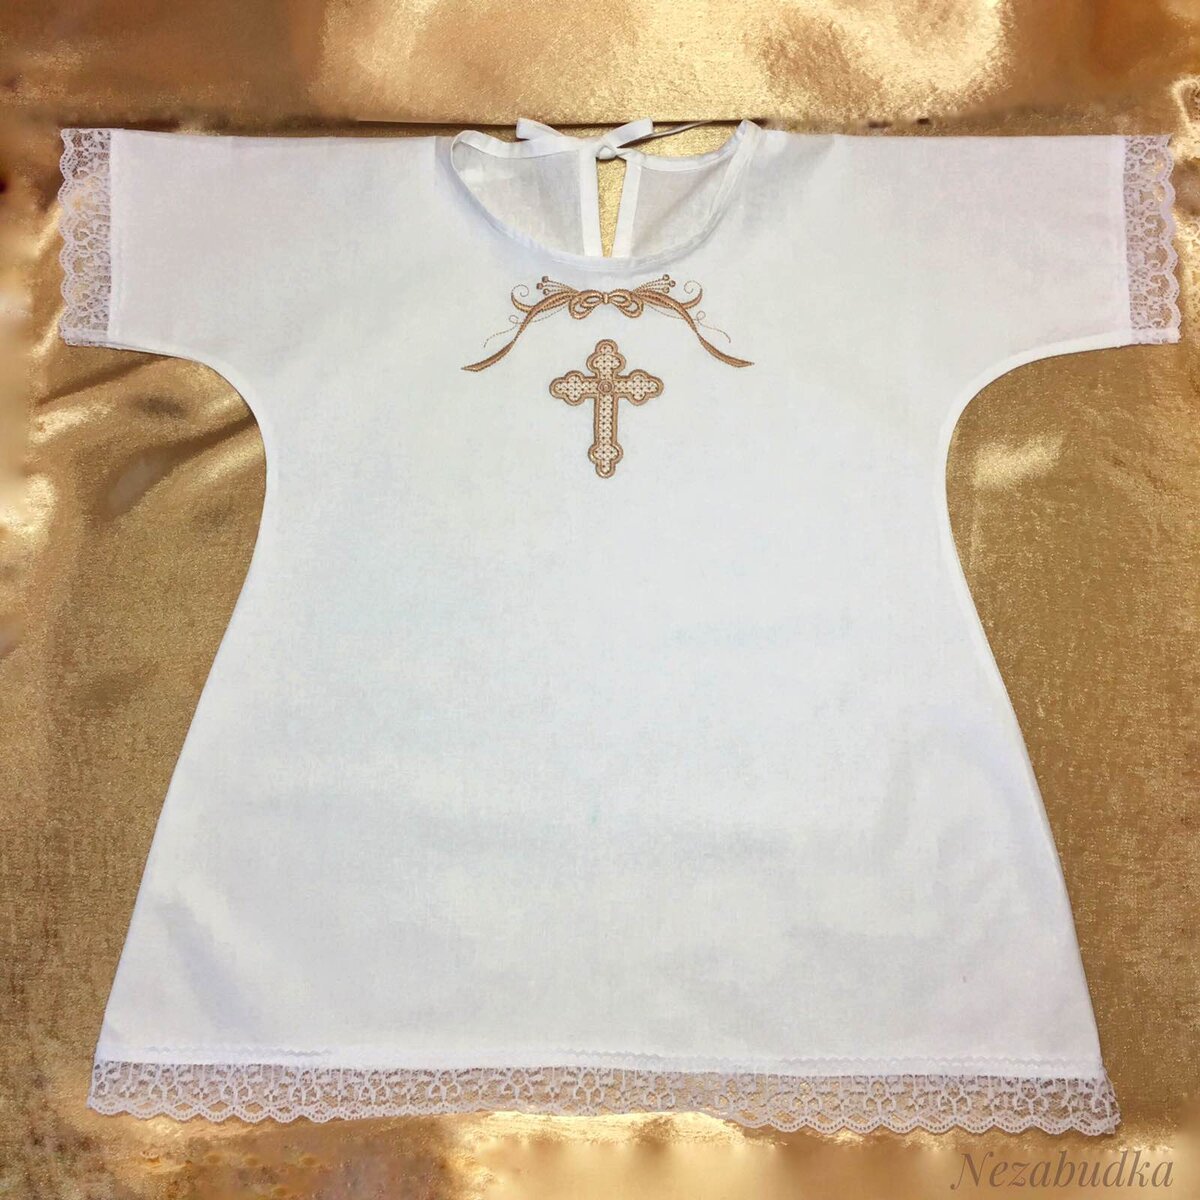 Как сшить крестильную рубашку для ребенка своими руками?